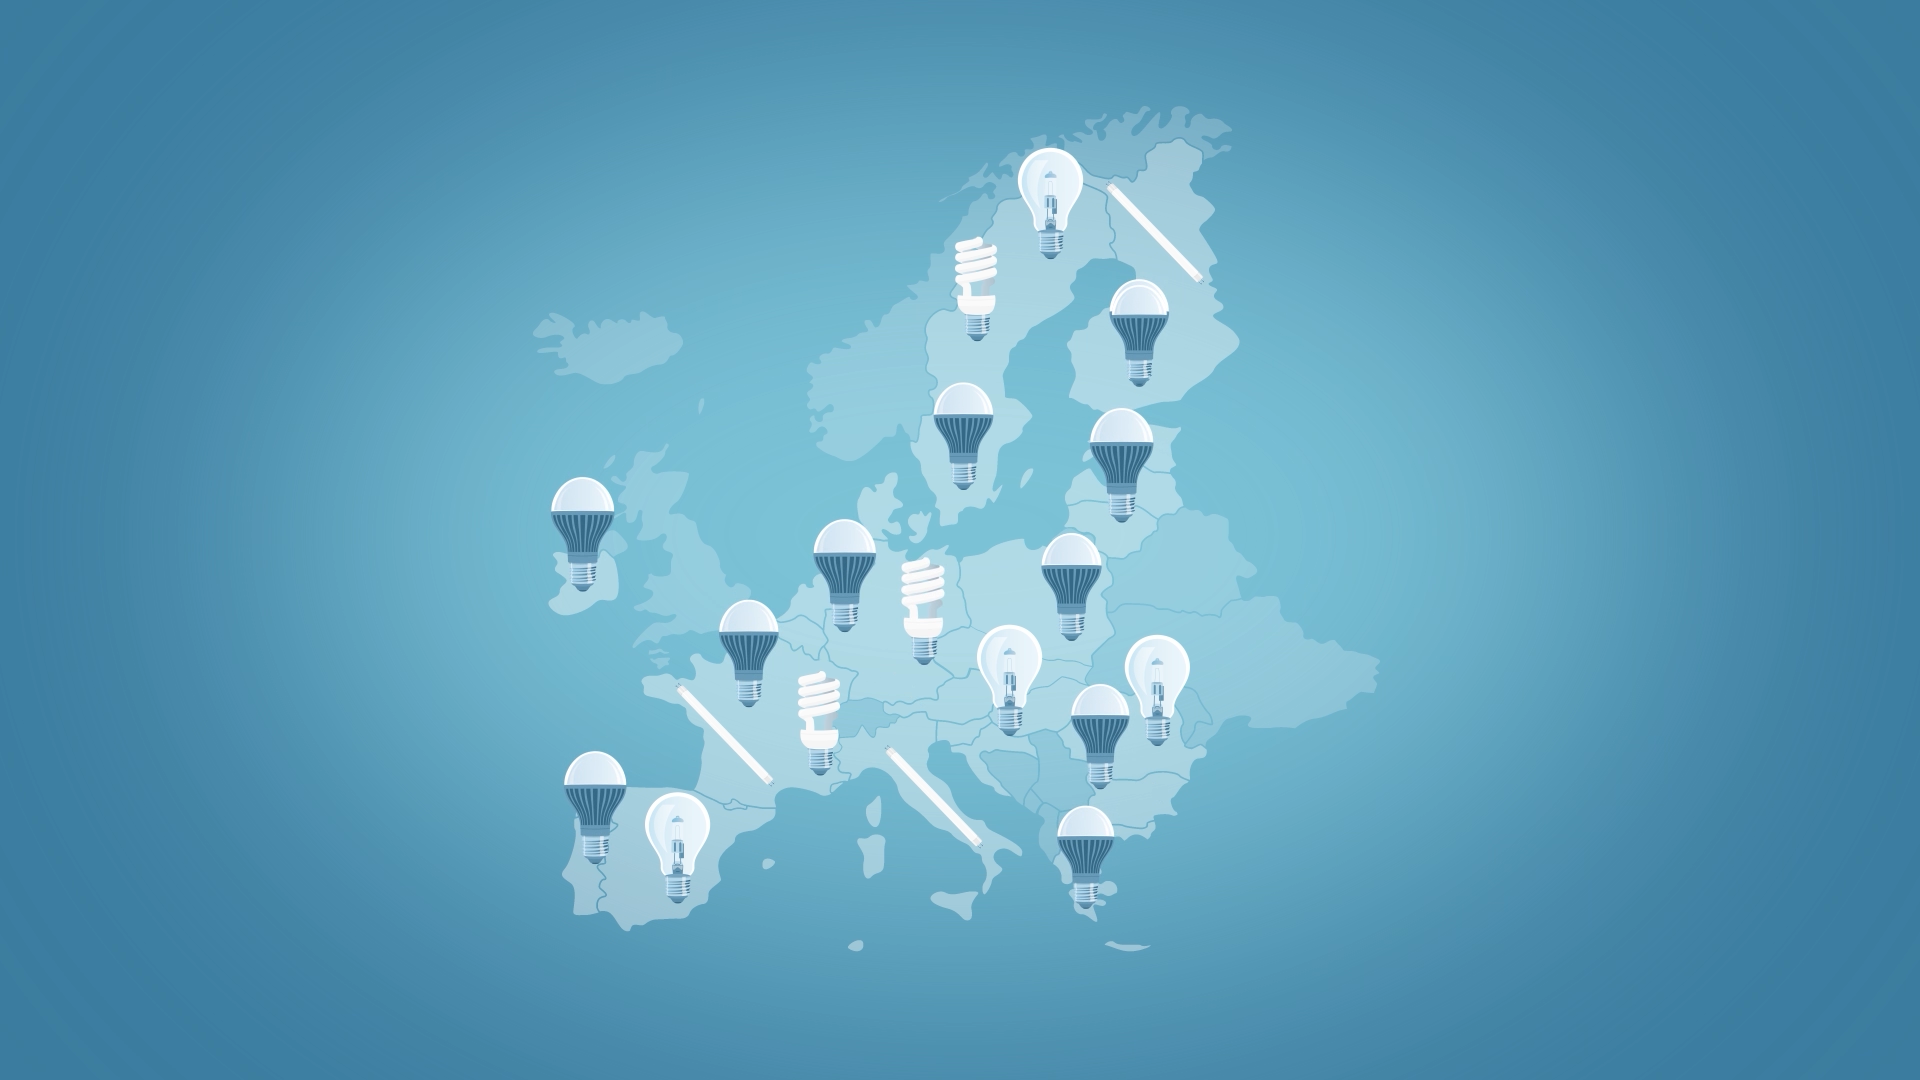 Standbild aus Video "Das neue EU-Energielabel für Beleuchtung"